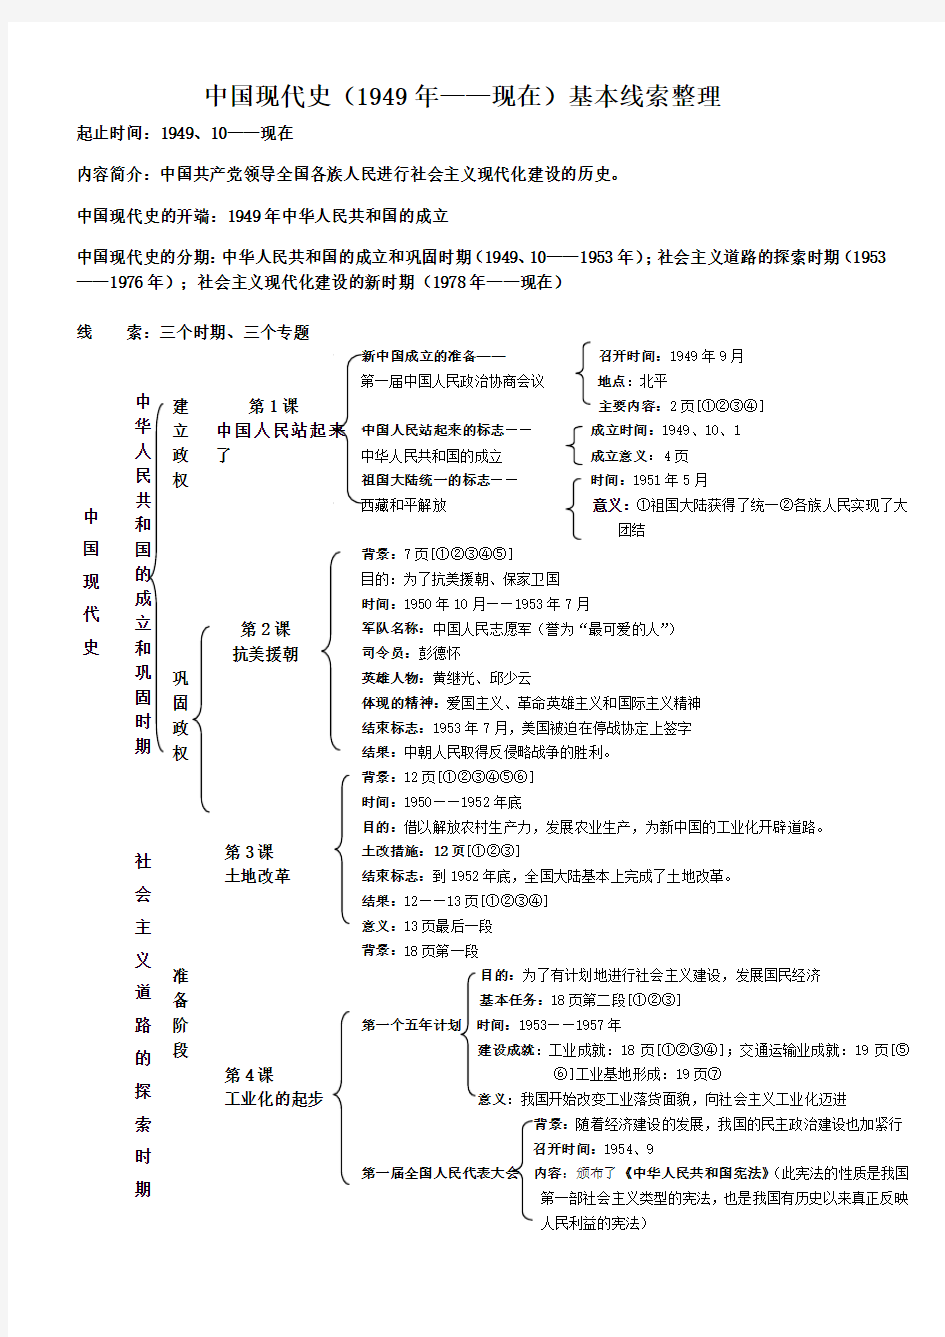 中国现代史(1949年——现在)基本线索整理